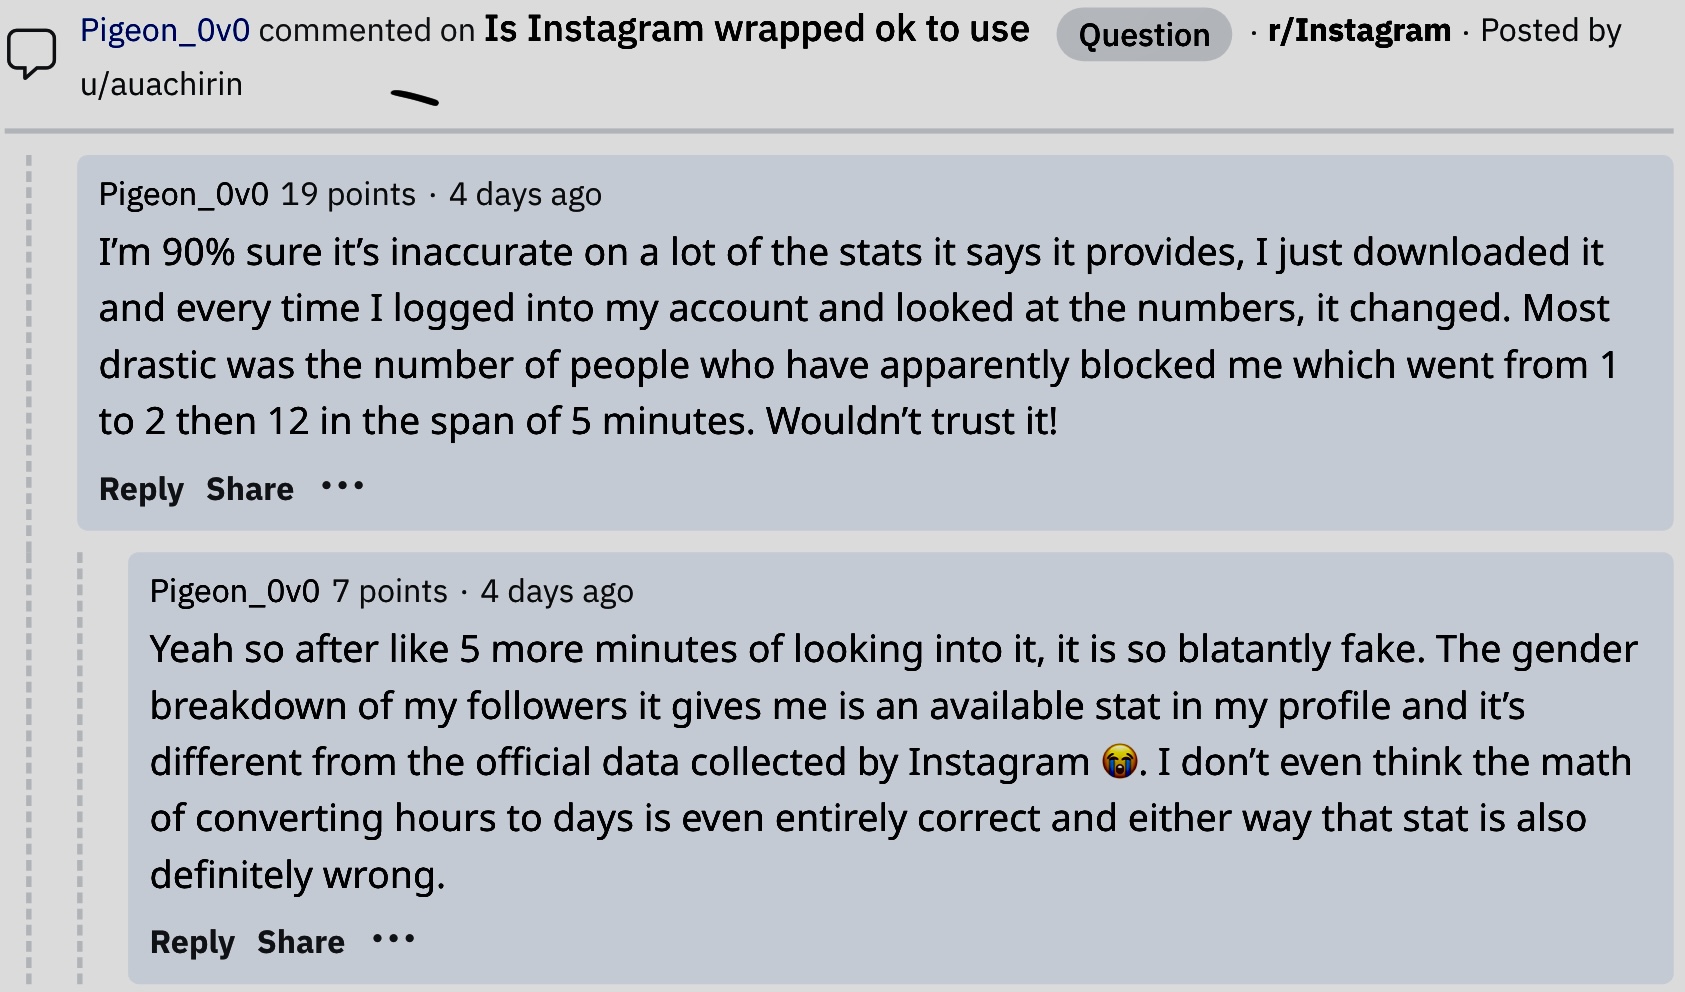 Beschwerden bezüglich der Wrapped for Instagram-App 3.